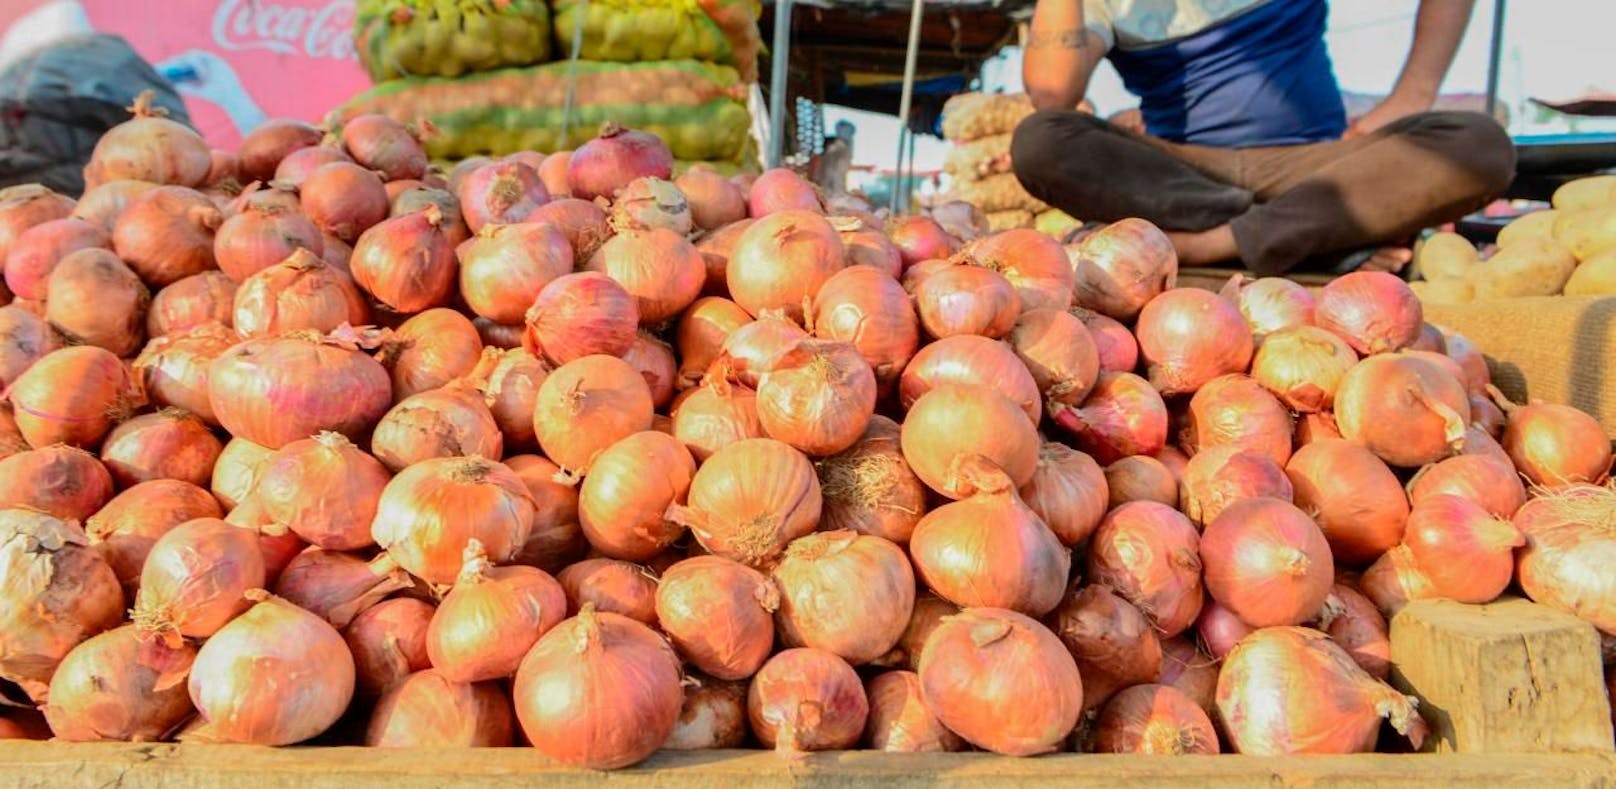 Indien hat das sofortige Ausfuhrverbot von Zwiebel beschlossen. 